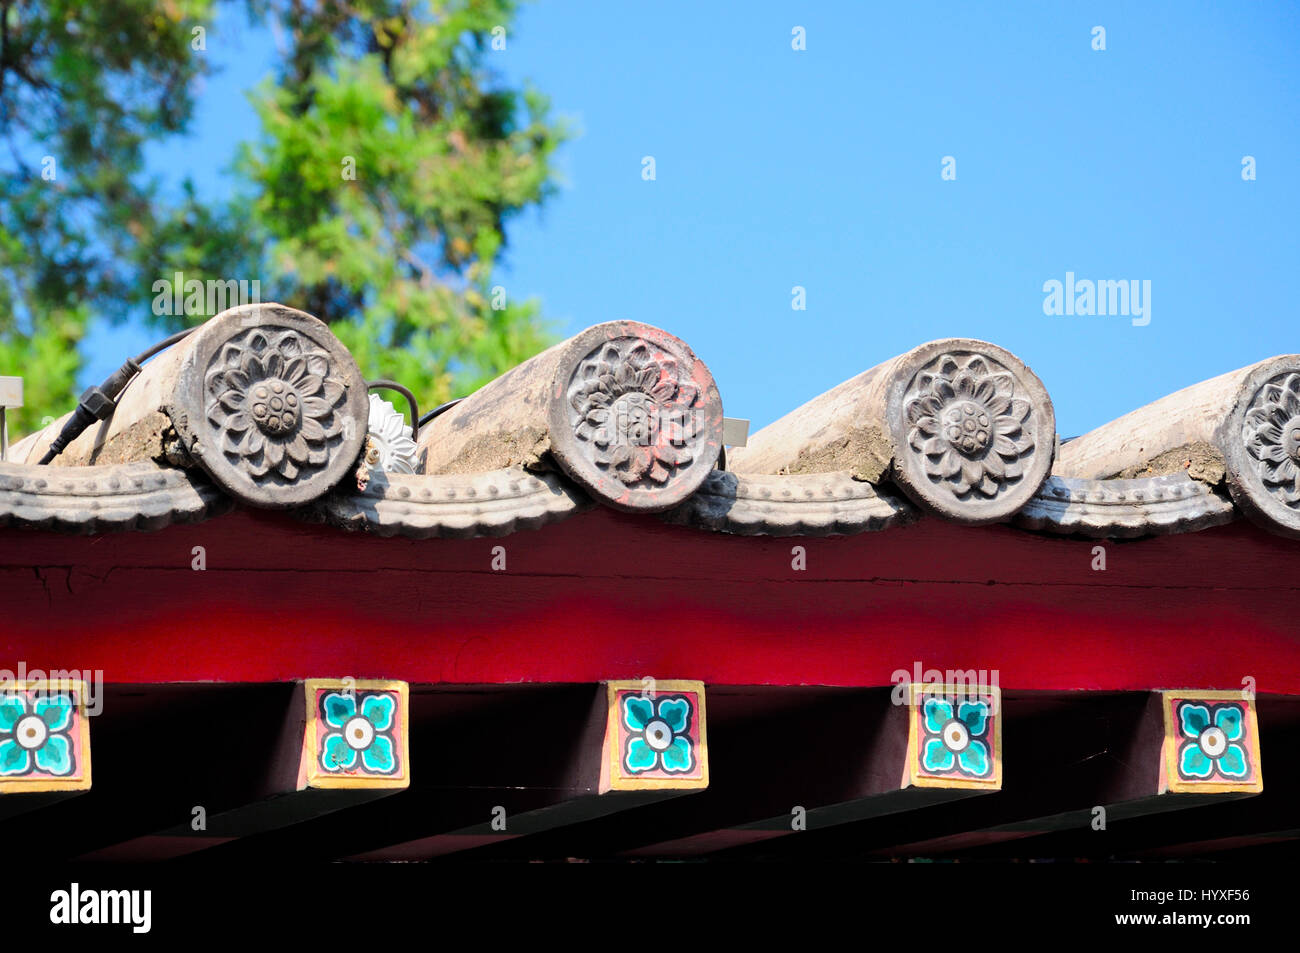 Fiore di loto i dettagli architettonici in stile cinese tetto in templi Xiangshan presso le Grotte di Longmen a Luoyang Cina nella Provincia di Henan. Foto Stock